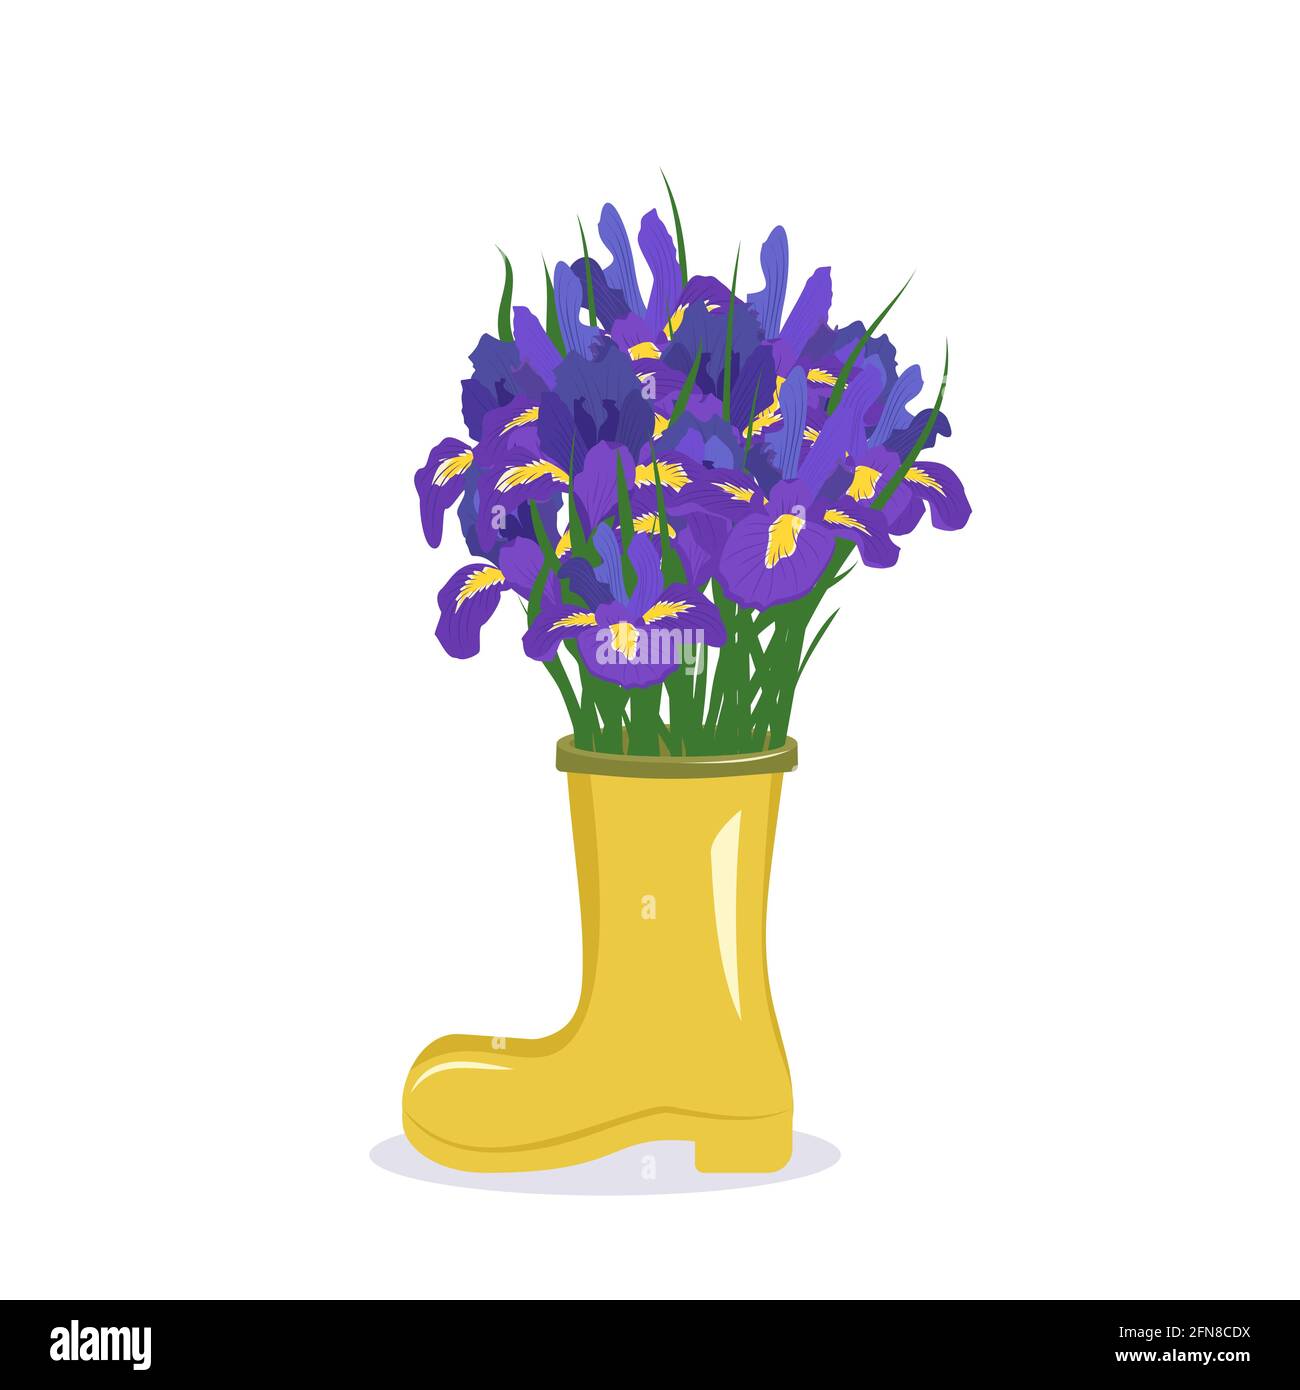 Flores moradas de primavera y verano en un jarrón. Un ramo de lirios en una bota amarilla como regalo. Diseño de interiores. Tienda de plantas Ilustración del Vector